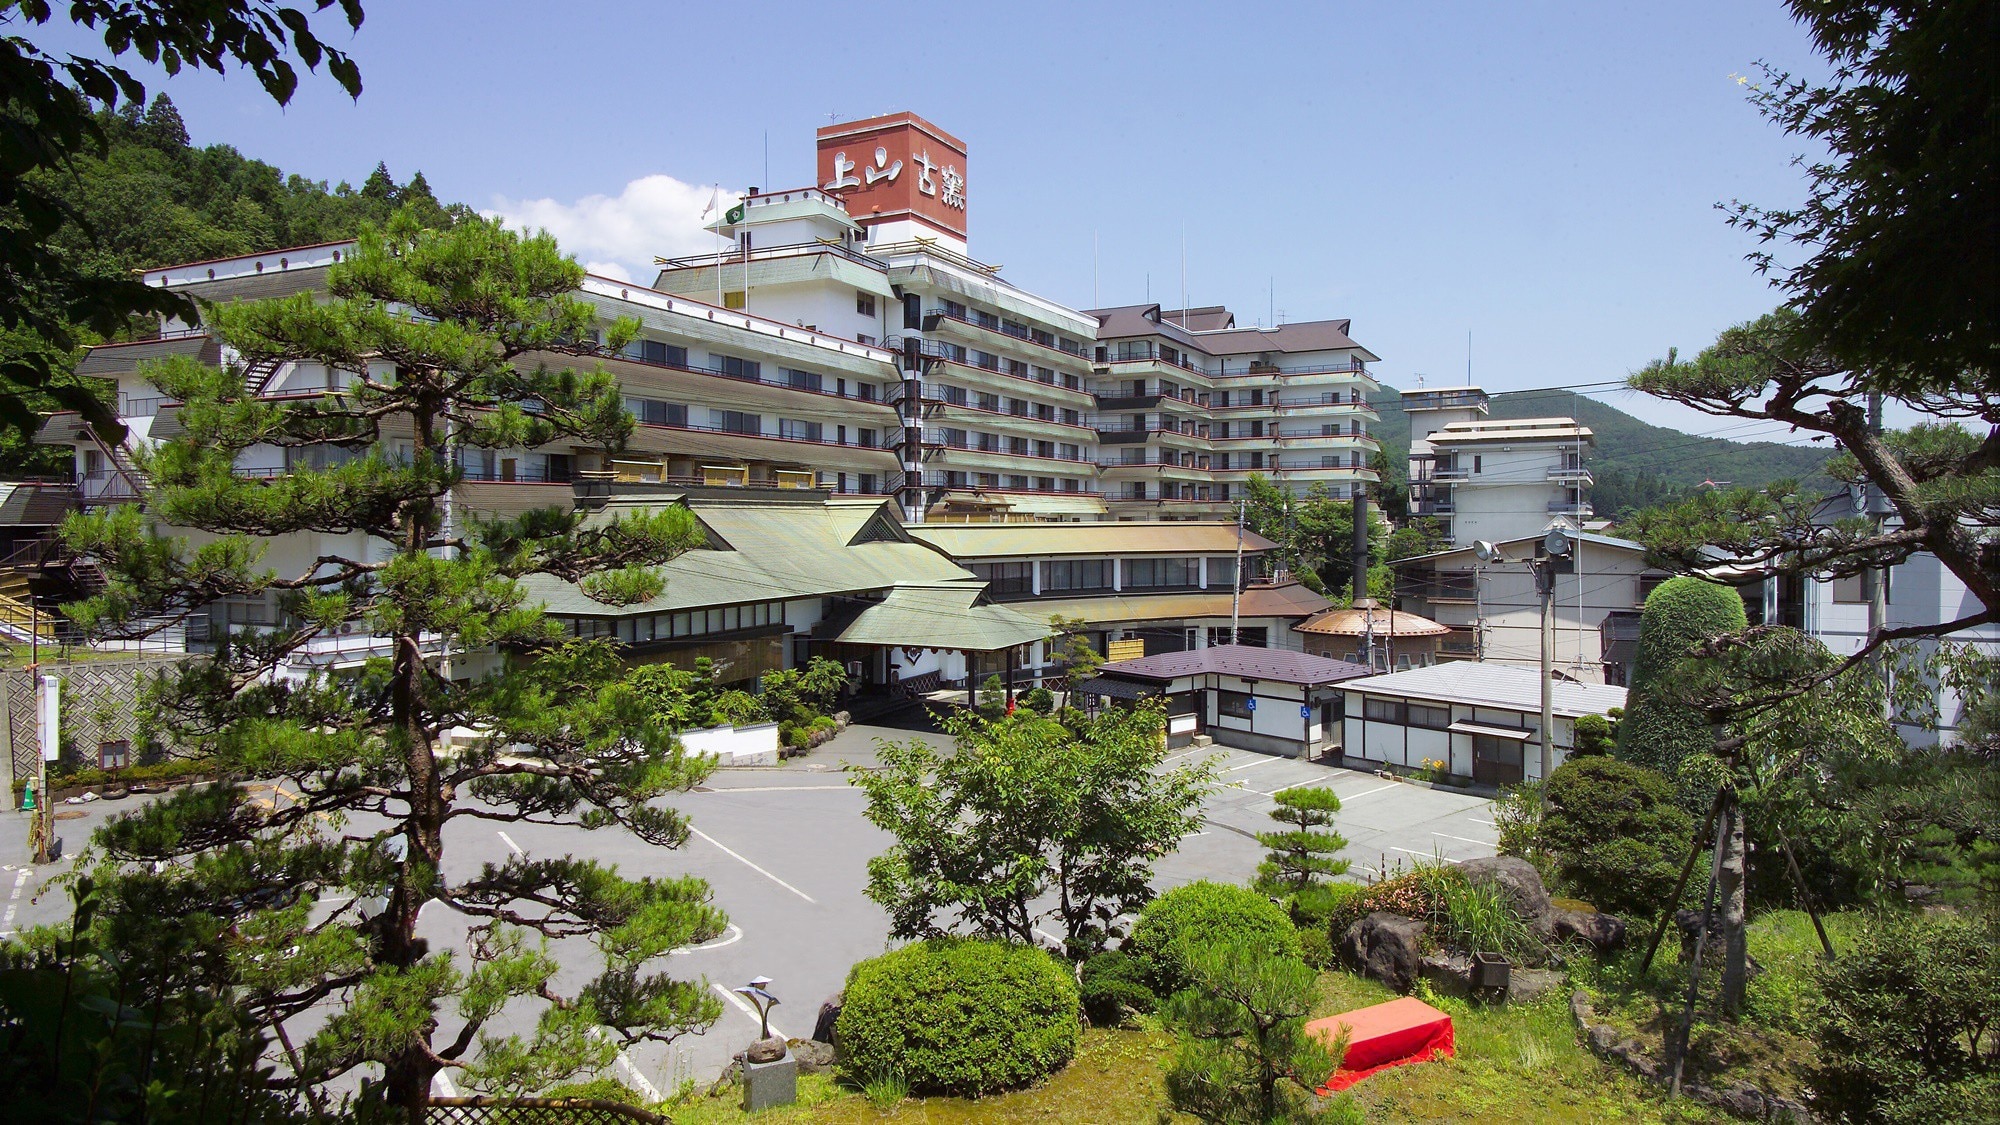 【外觀】山形縣上山地區是擁有555年以上歷史的溫泉村。酒店始建於 1951 年。